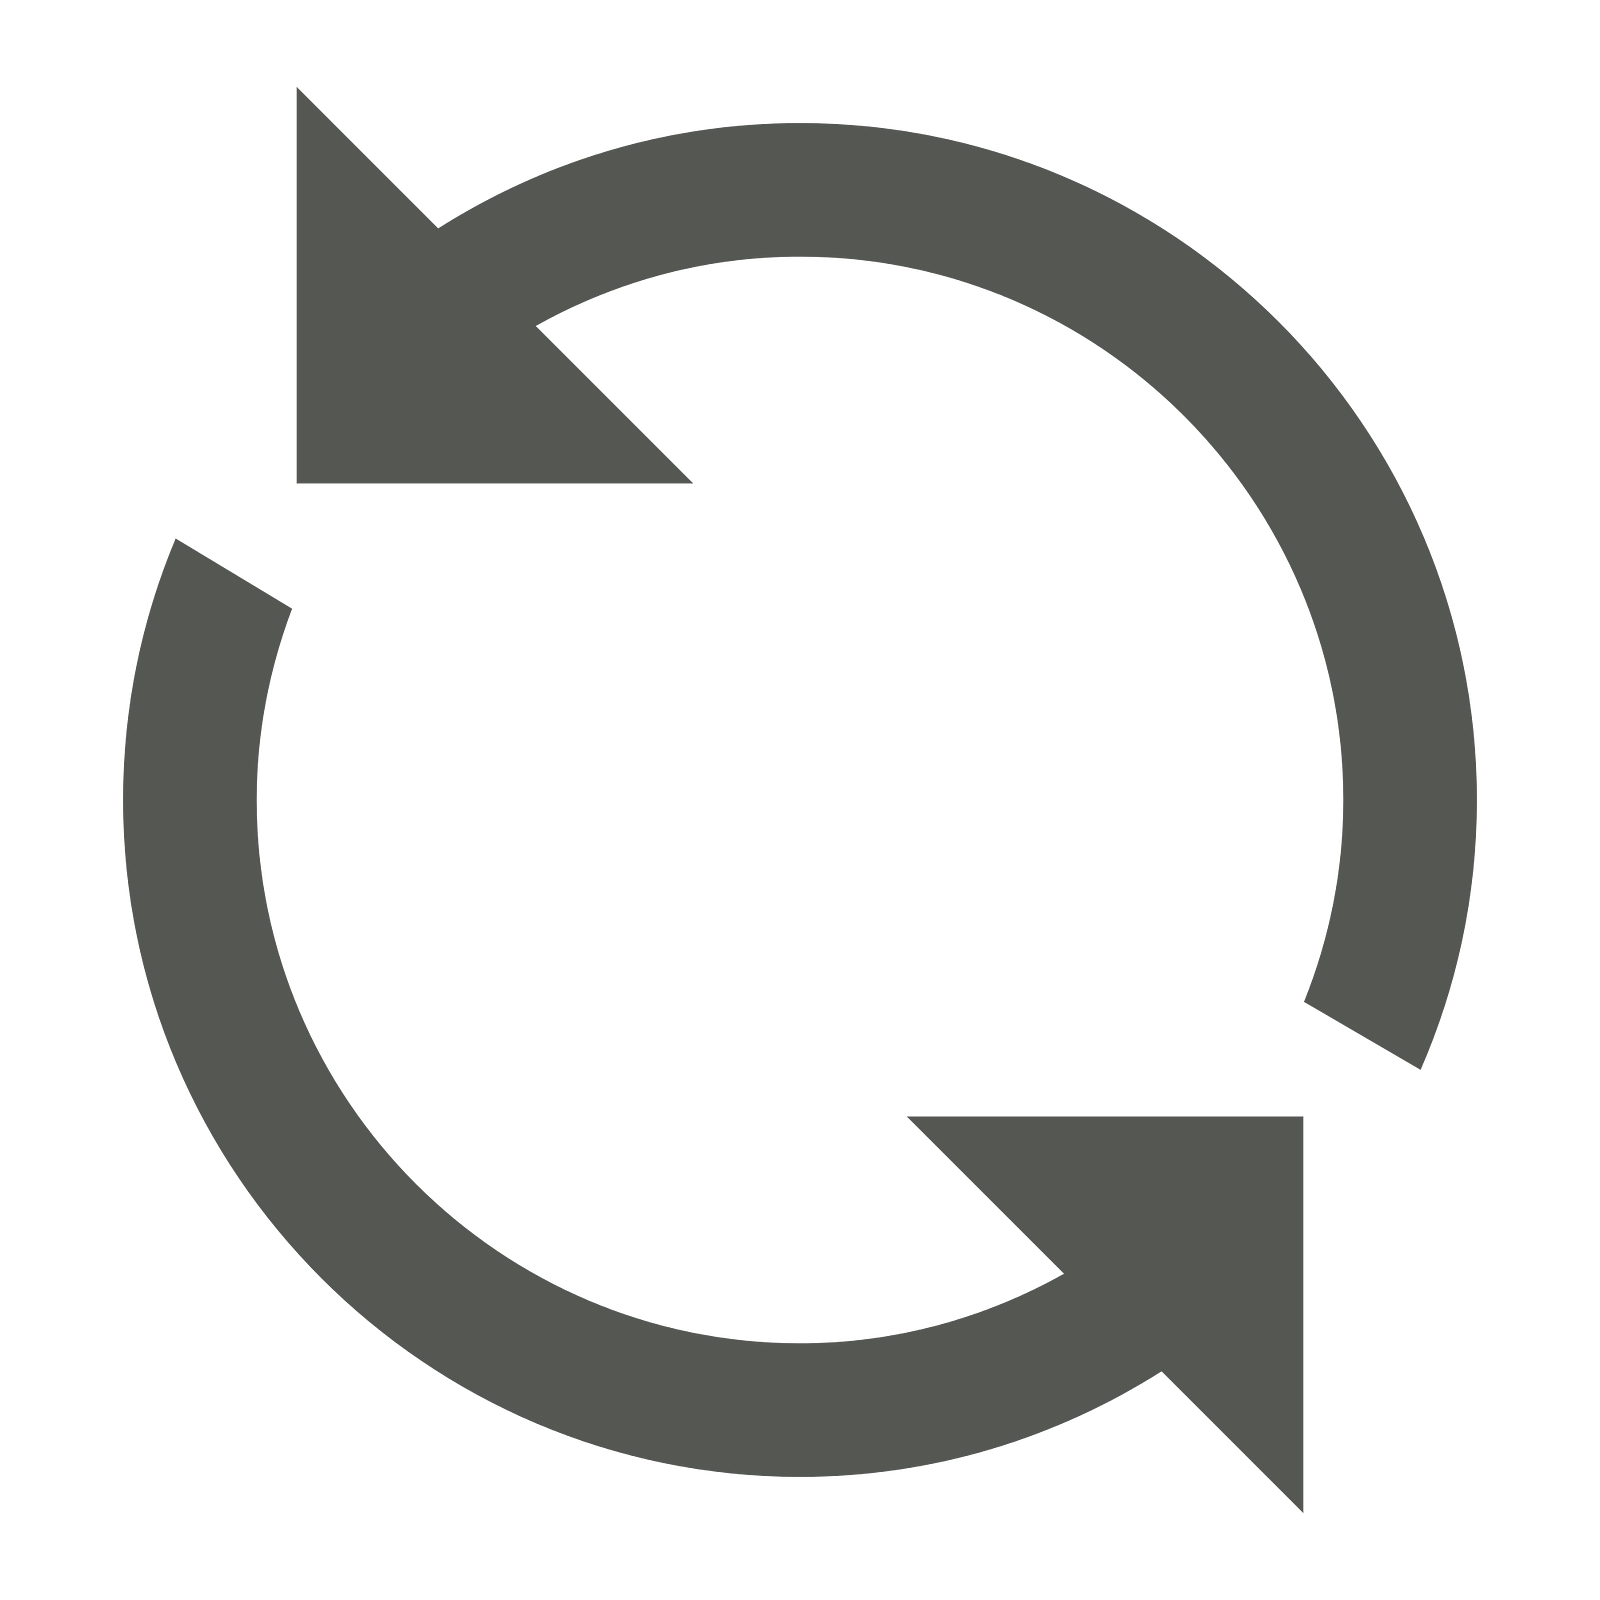 Refresh Icon — lambang penanda teknik remidial Gambar diambil dari Wikimedia